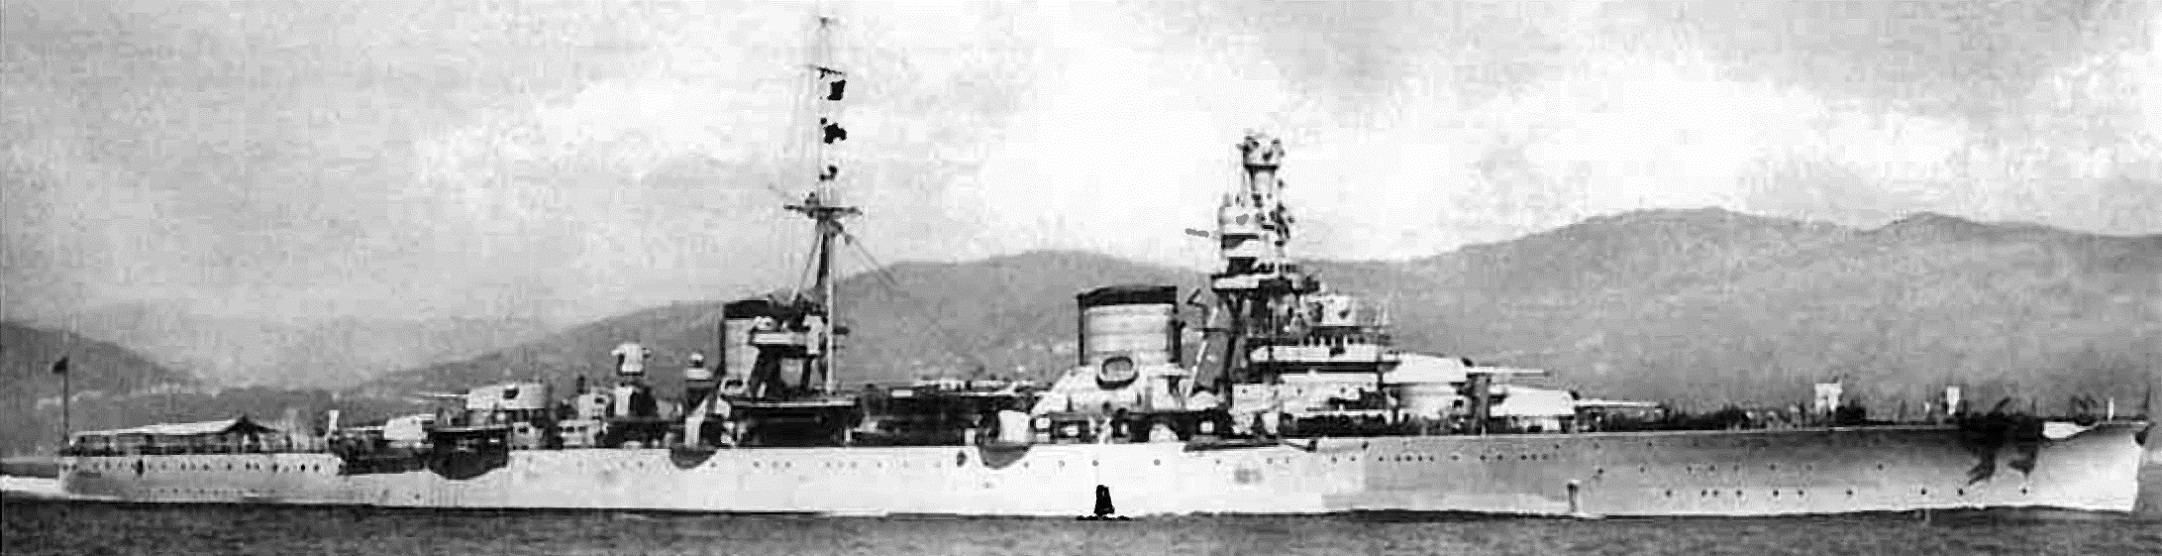 Trieste 1931.jpg